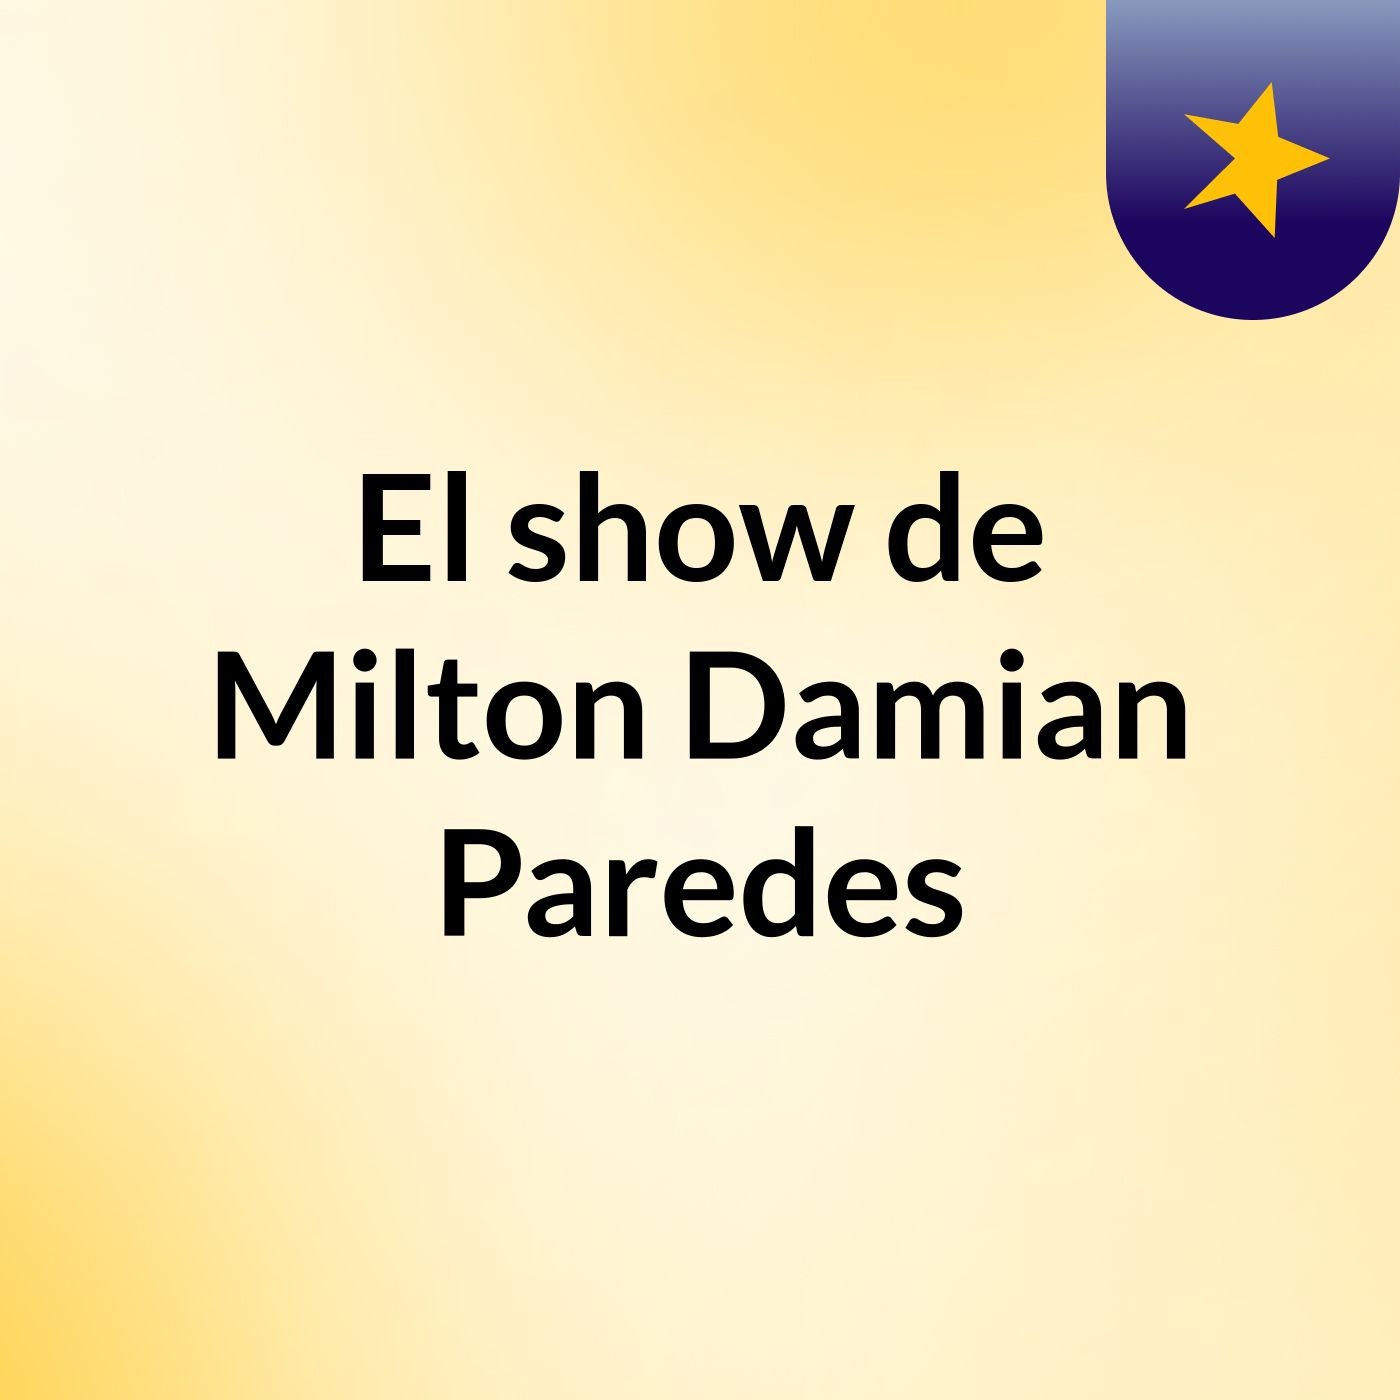 El show de Milton Damian Paredes